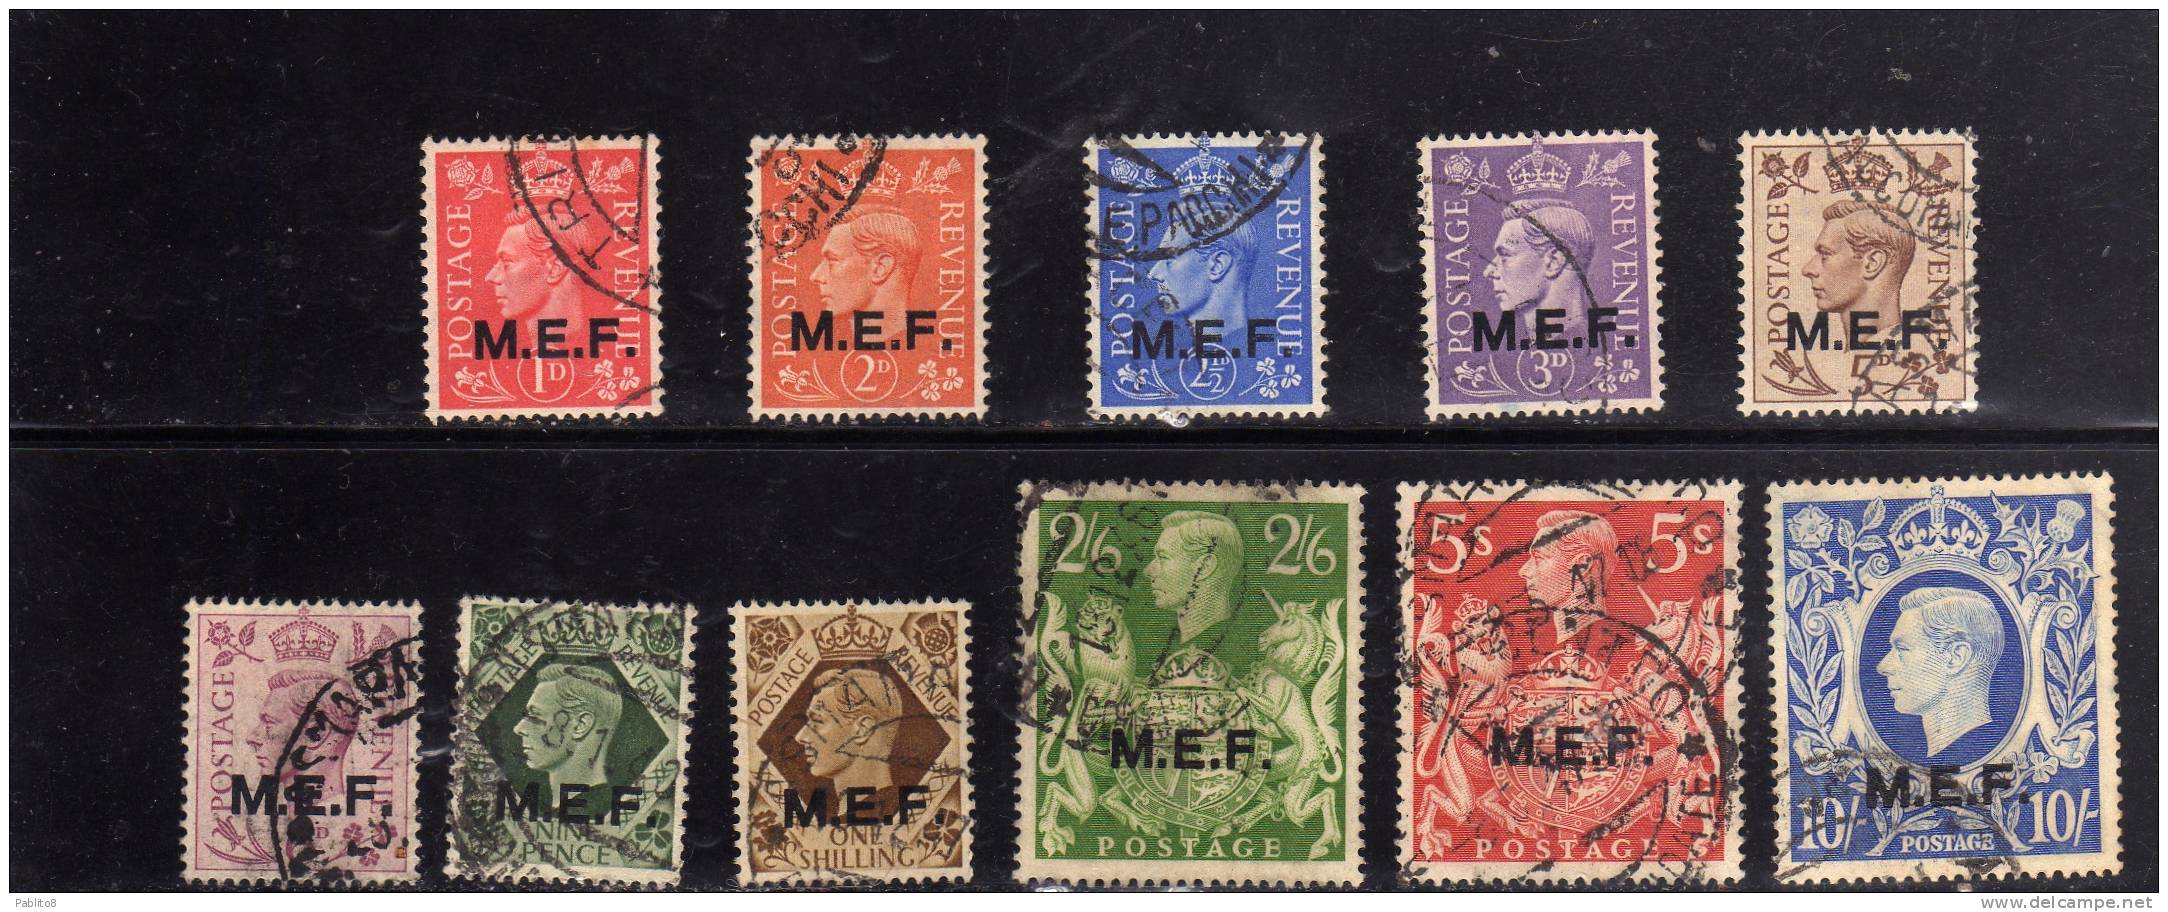 MEF M.E.F. 1943 - 1947 SERIE COMPLETA COMPLETE SET USATA USED OBLITERE' - British Occ. MEF